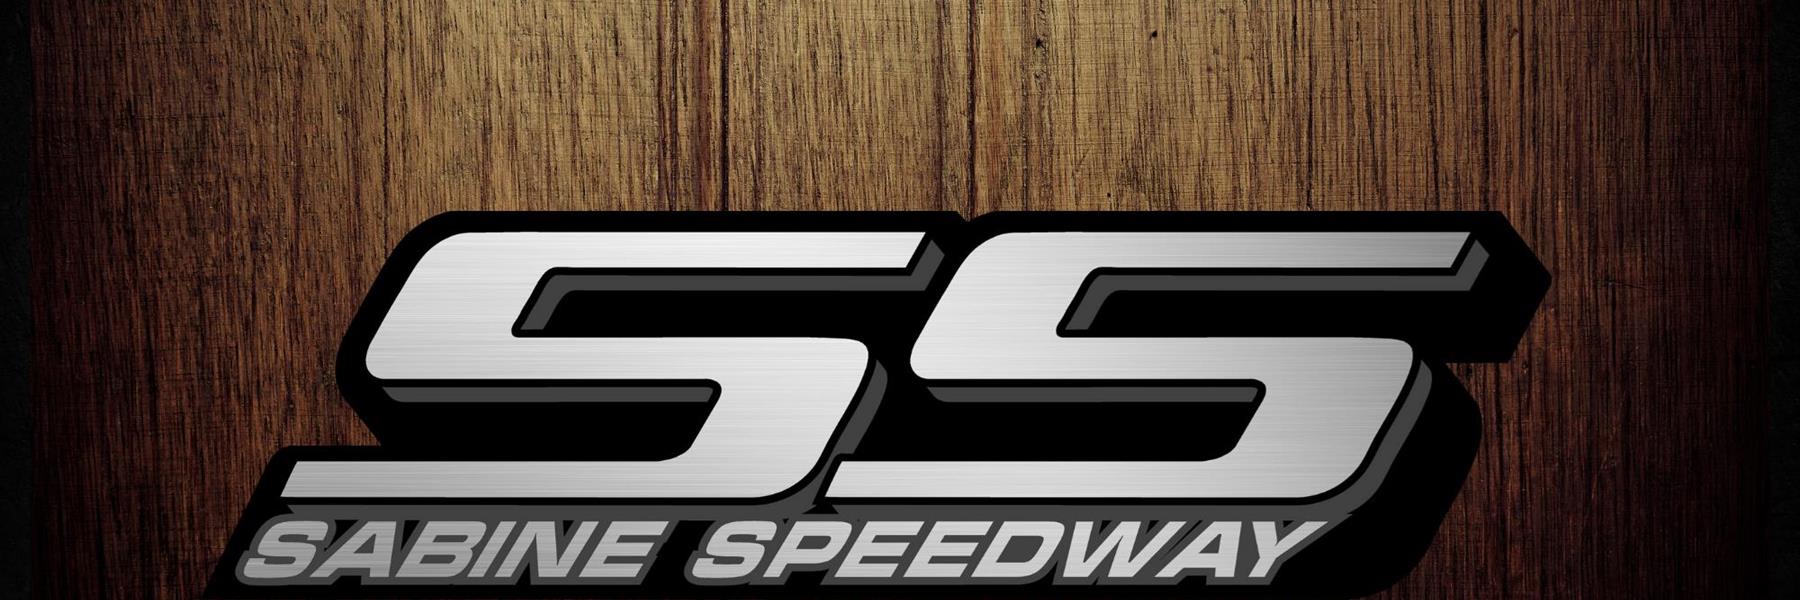 8/5/2022 - Sabine Speedway